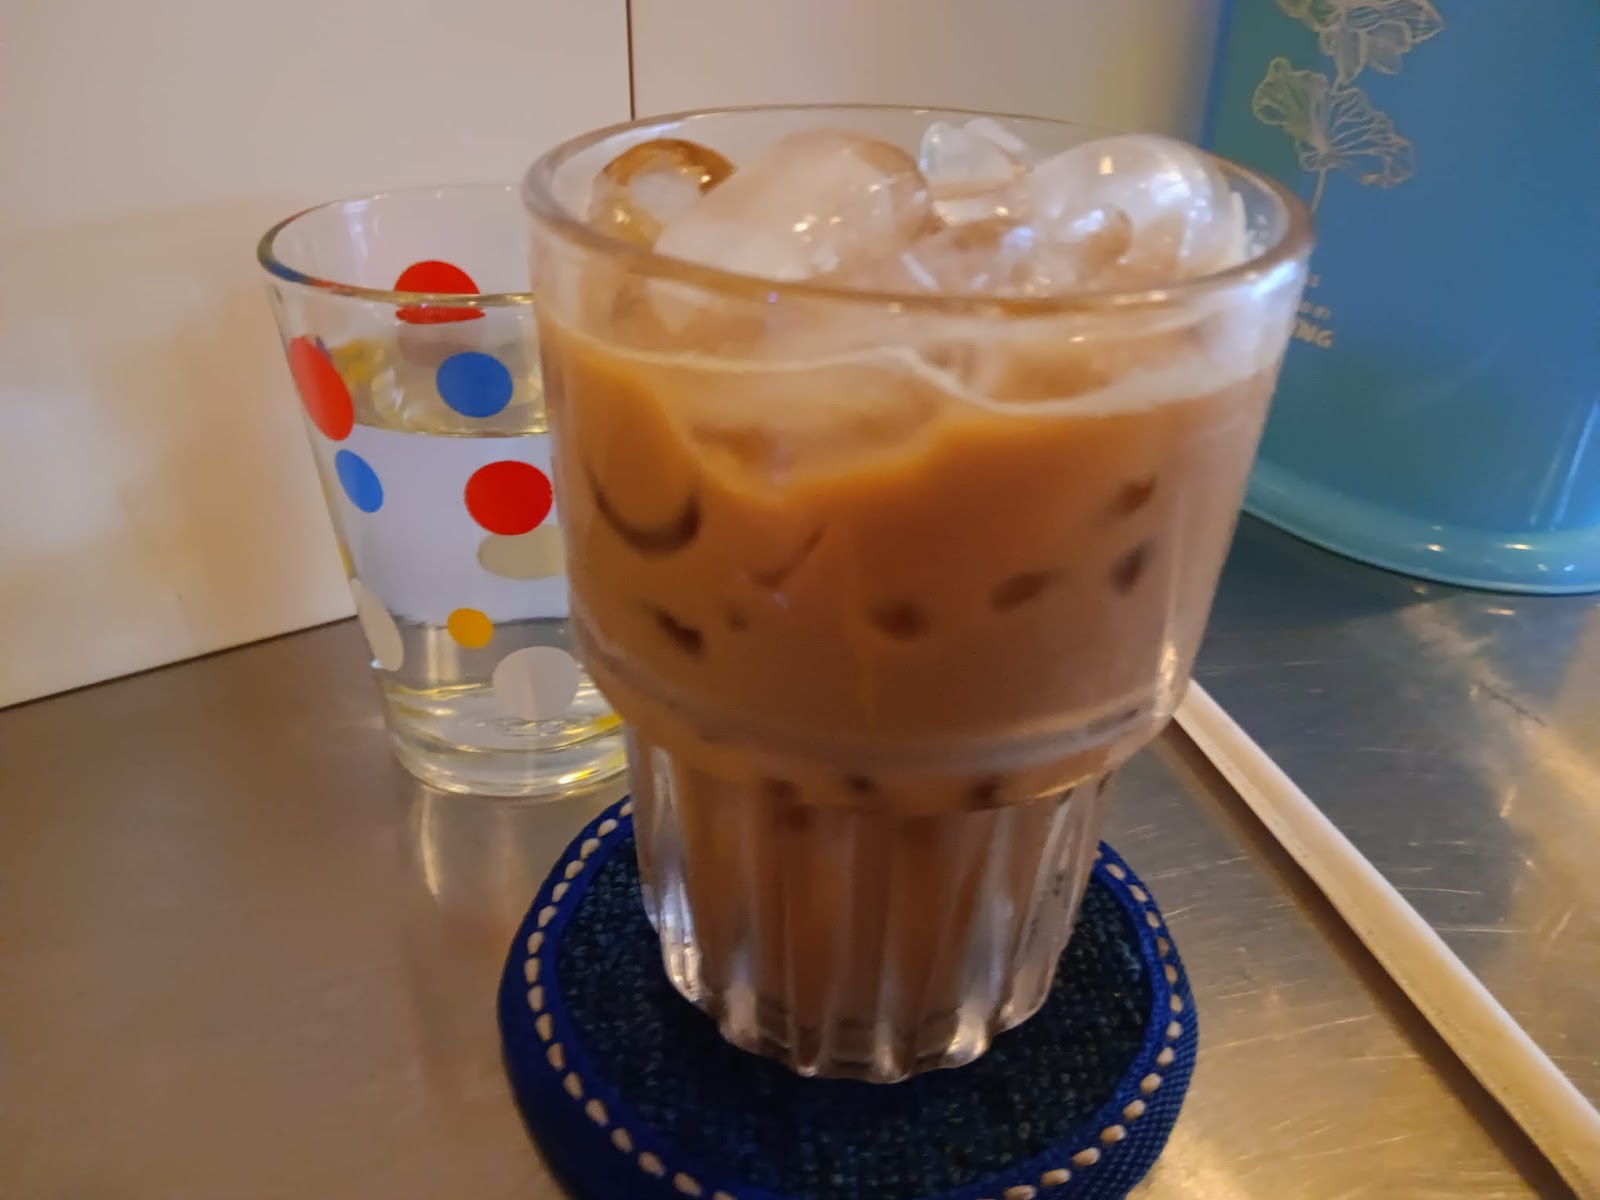 iced Vietnamese coffee at An Choi